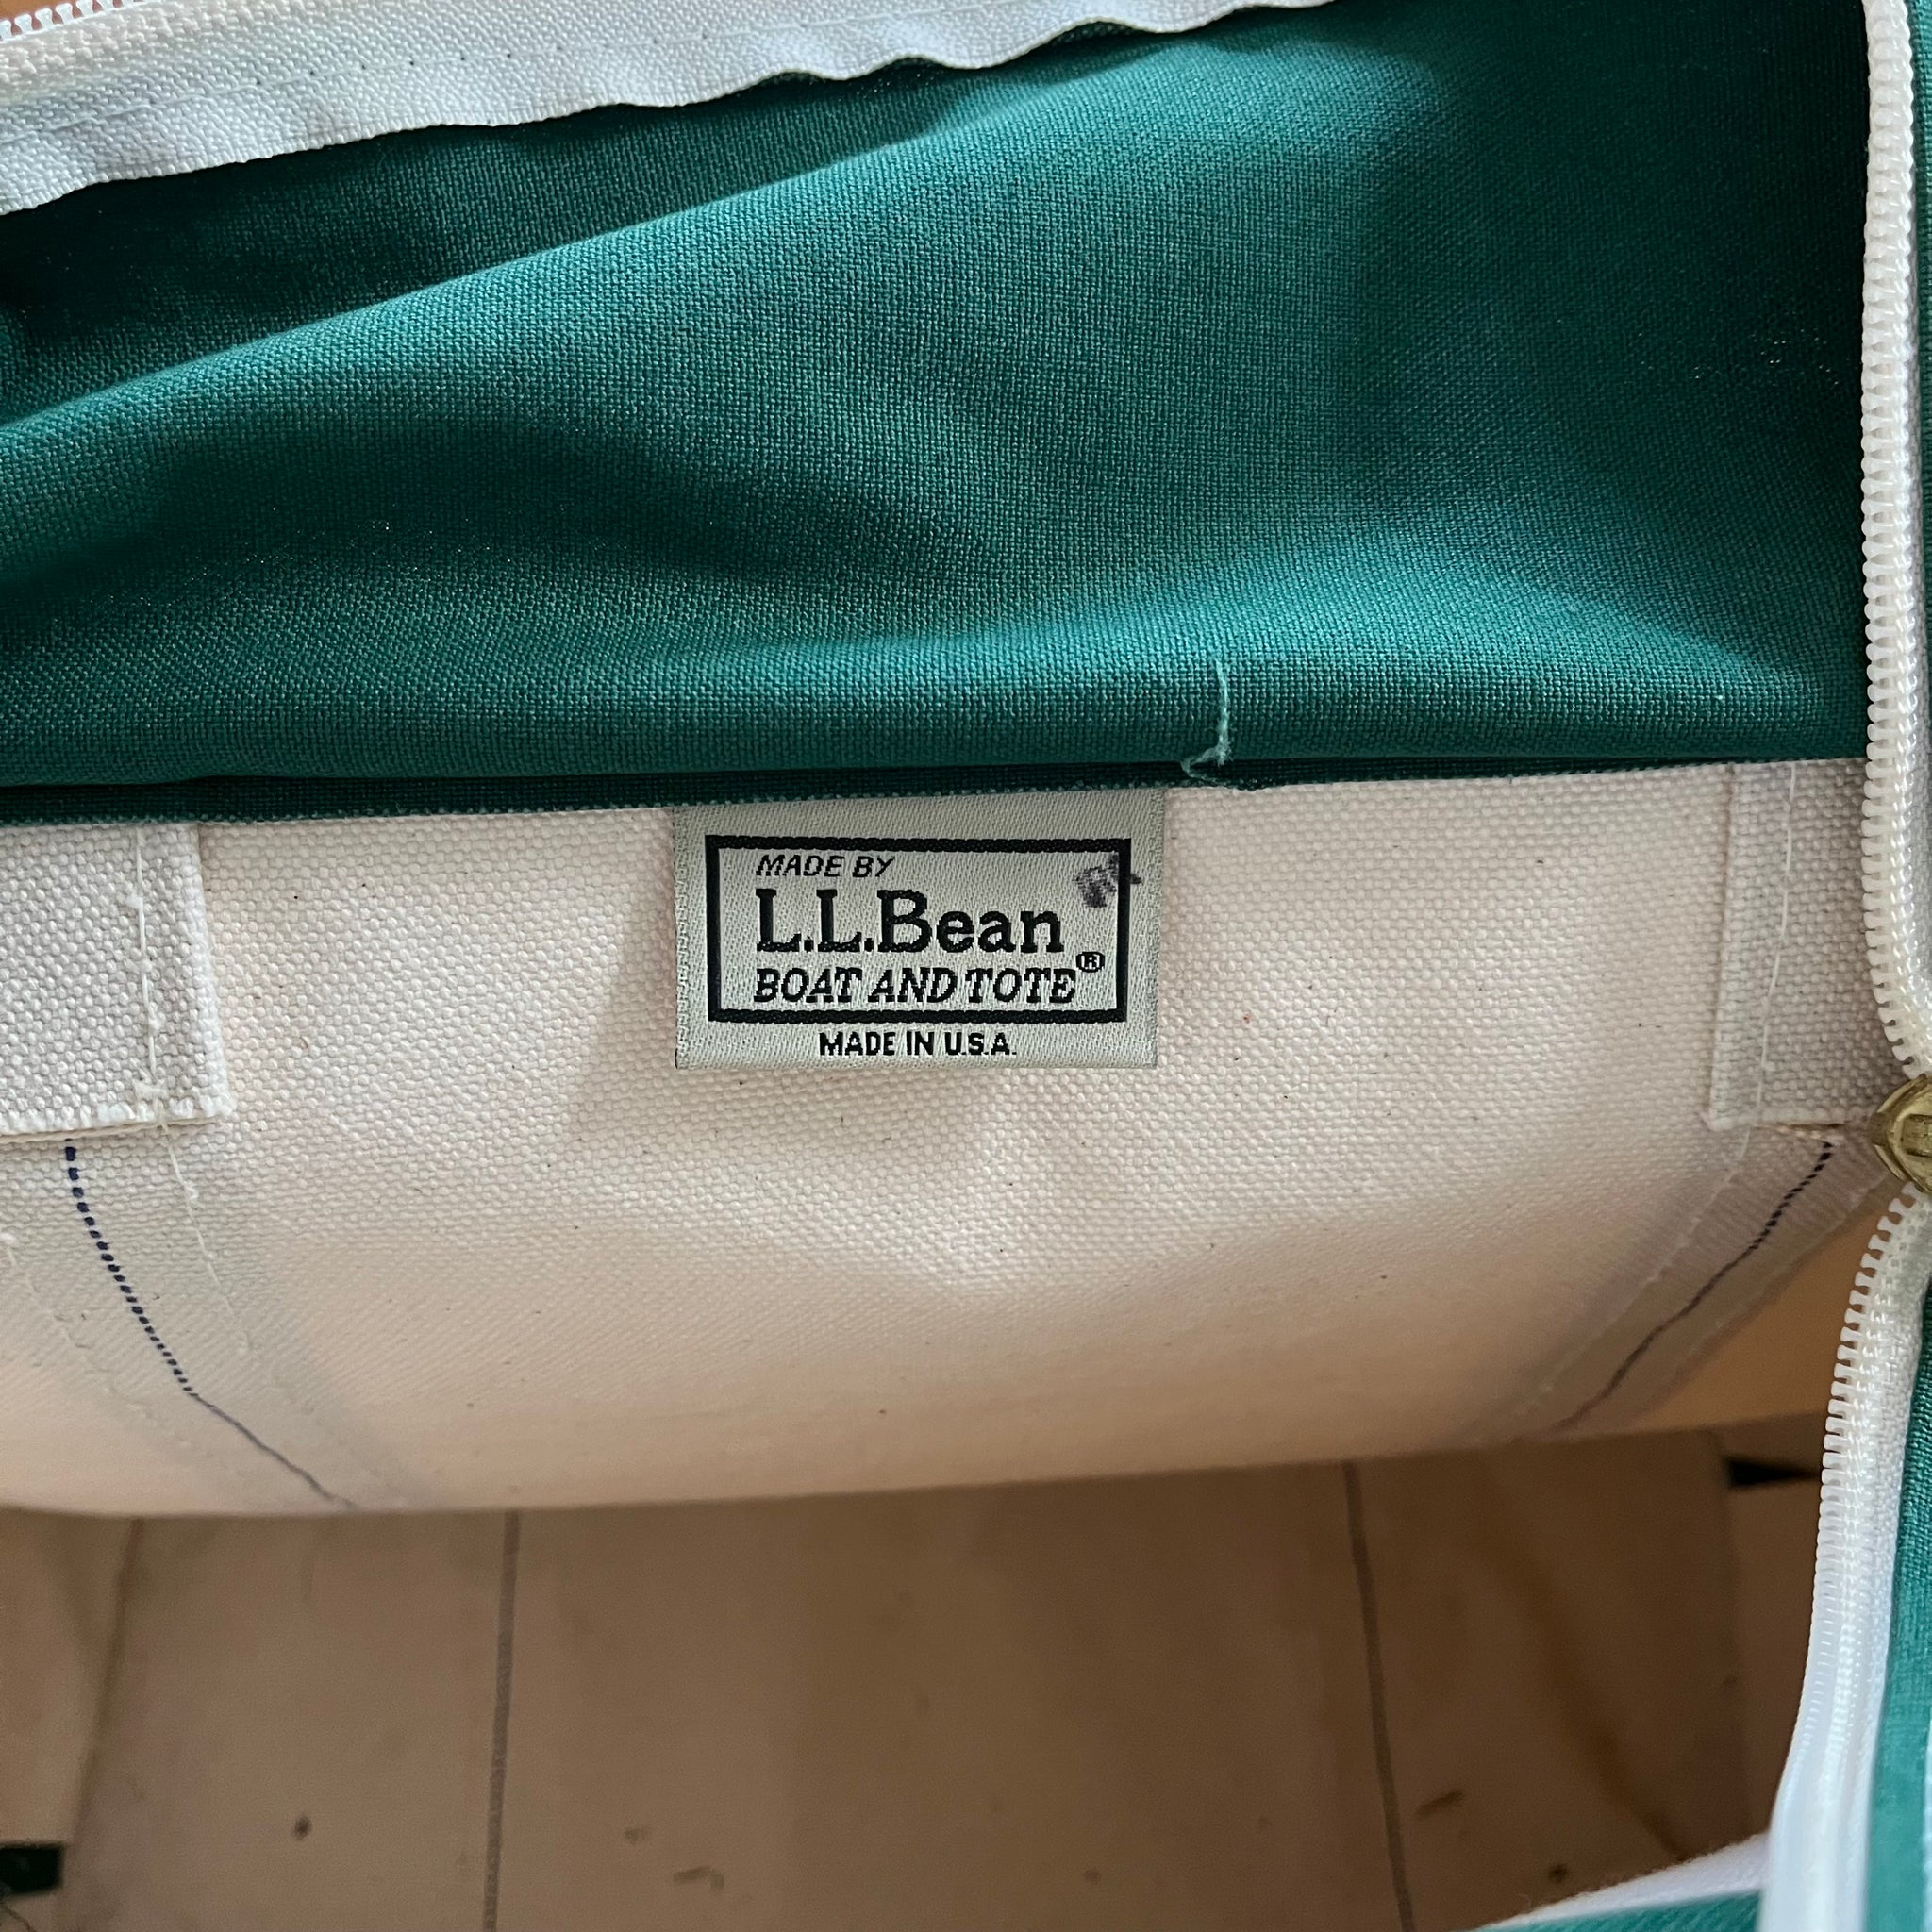 LL Bean boat & tote zipper bag 16x12